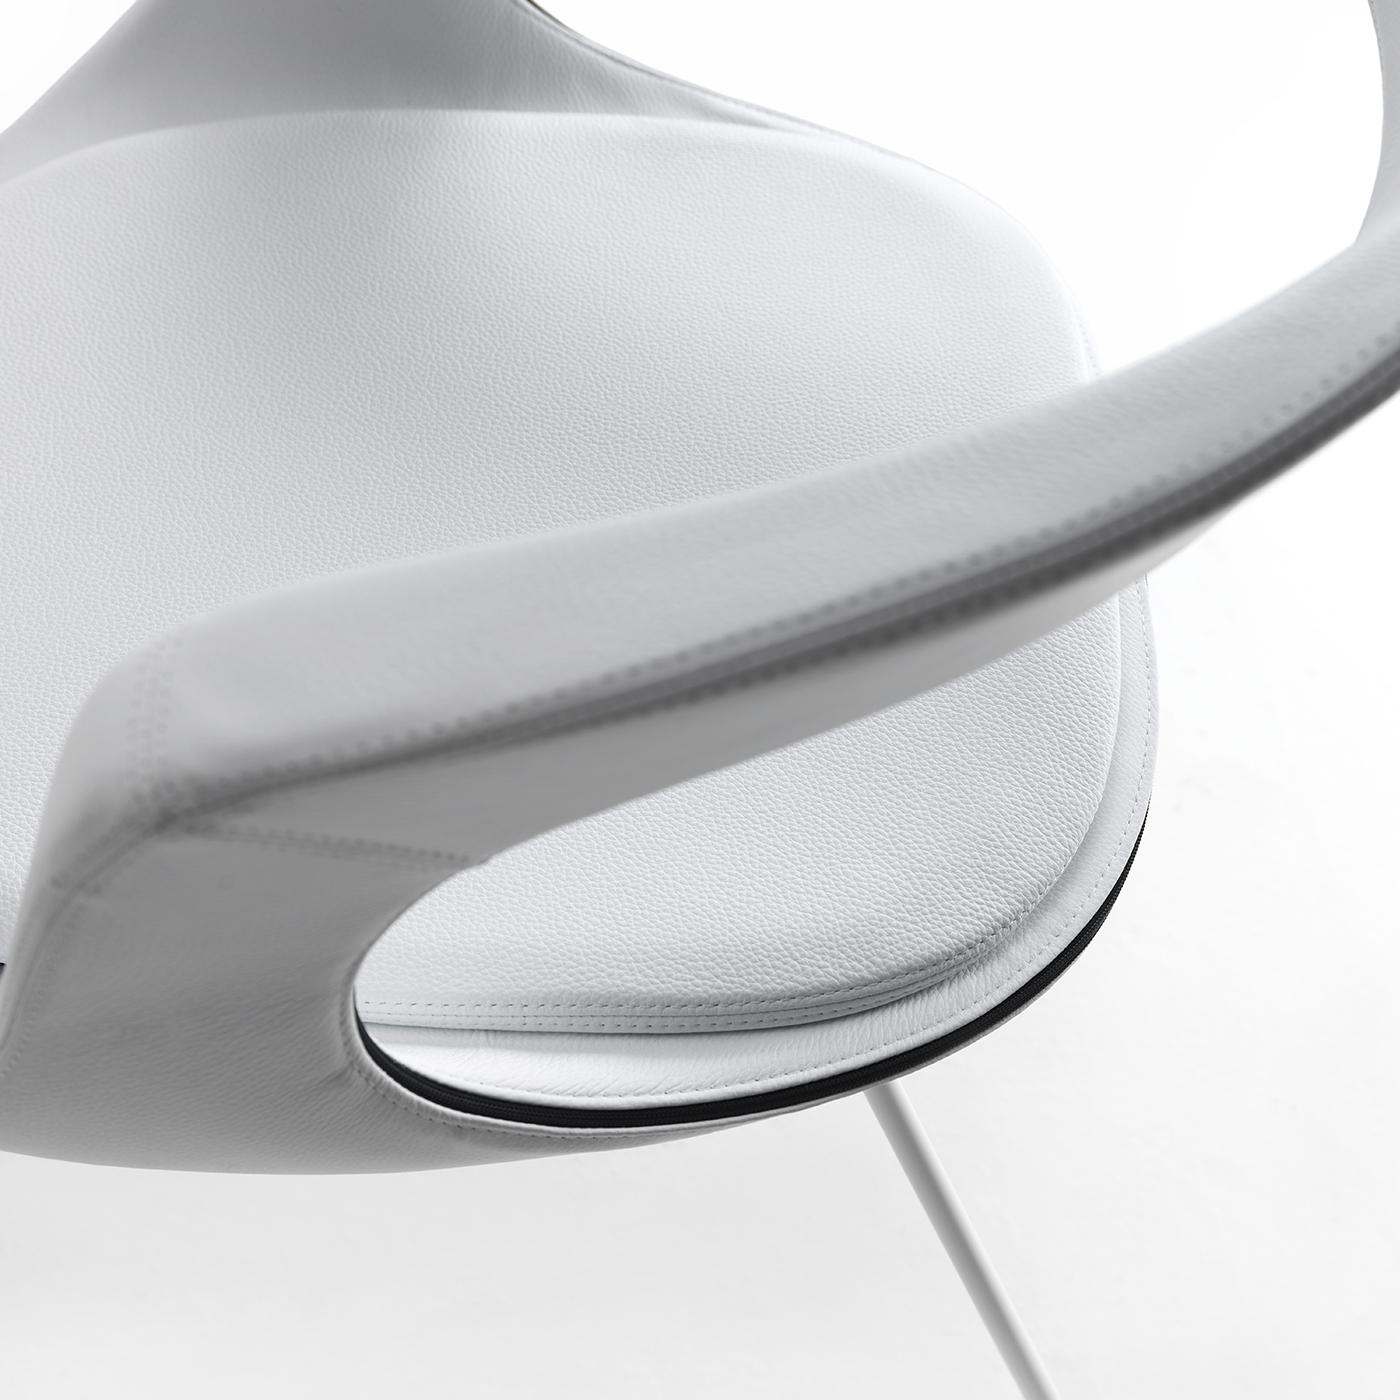 Dieser Stuhl mit niedriger Rückenlehne im Schlittenstil besteht aus einer Stahlstruktur, die in mattem Weiß lackiert ist und mit einem seidig-weißen, weichen Lederbezug über einer Polyurethanschaumpolsterung versehen ist. Das schlichte Design des